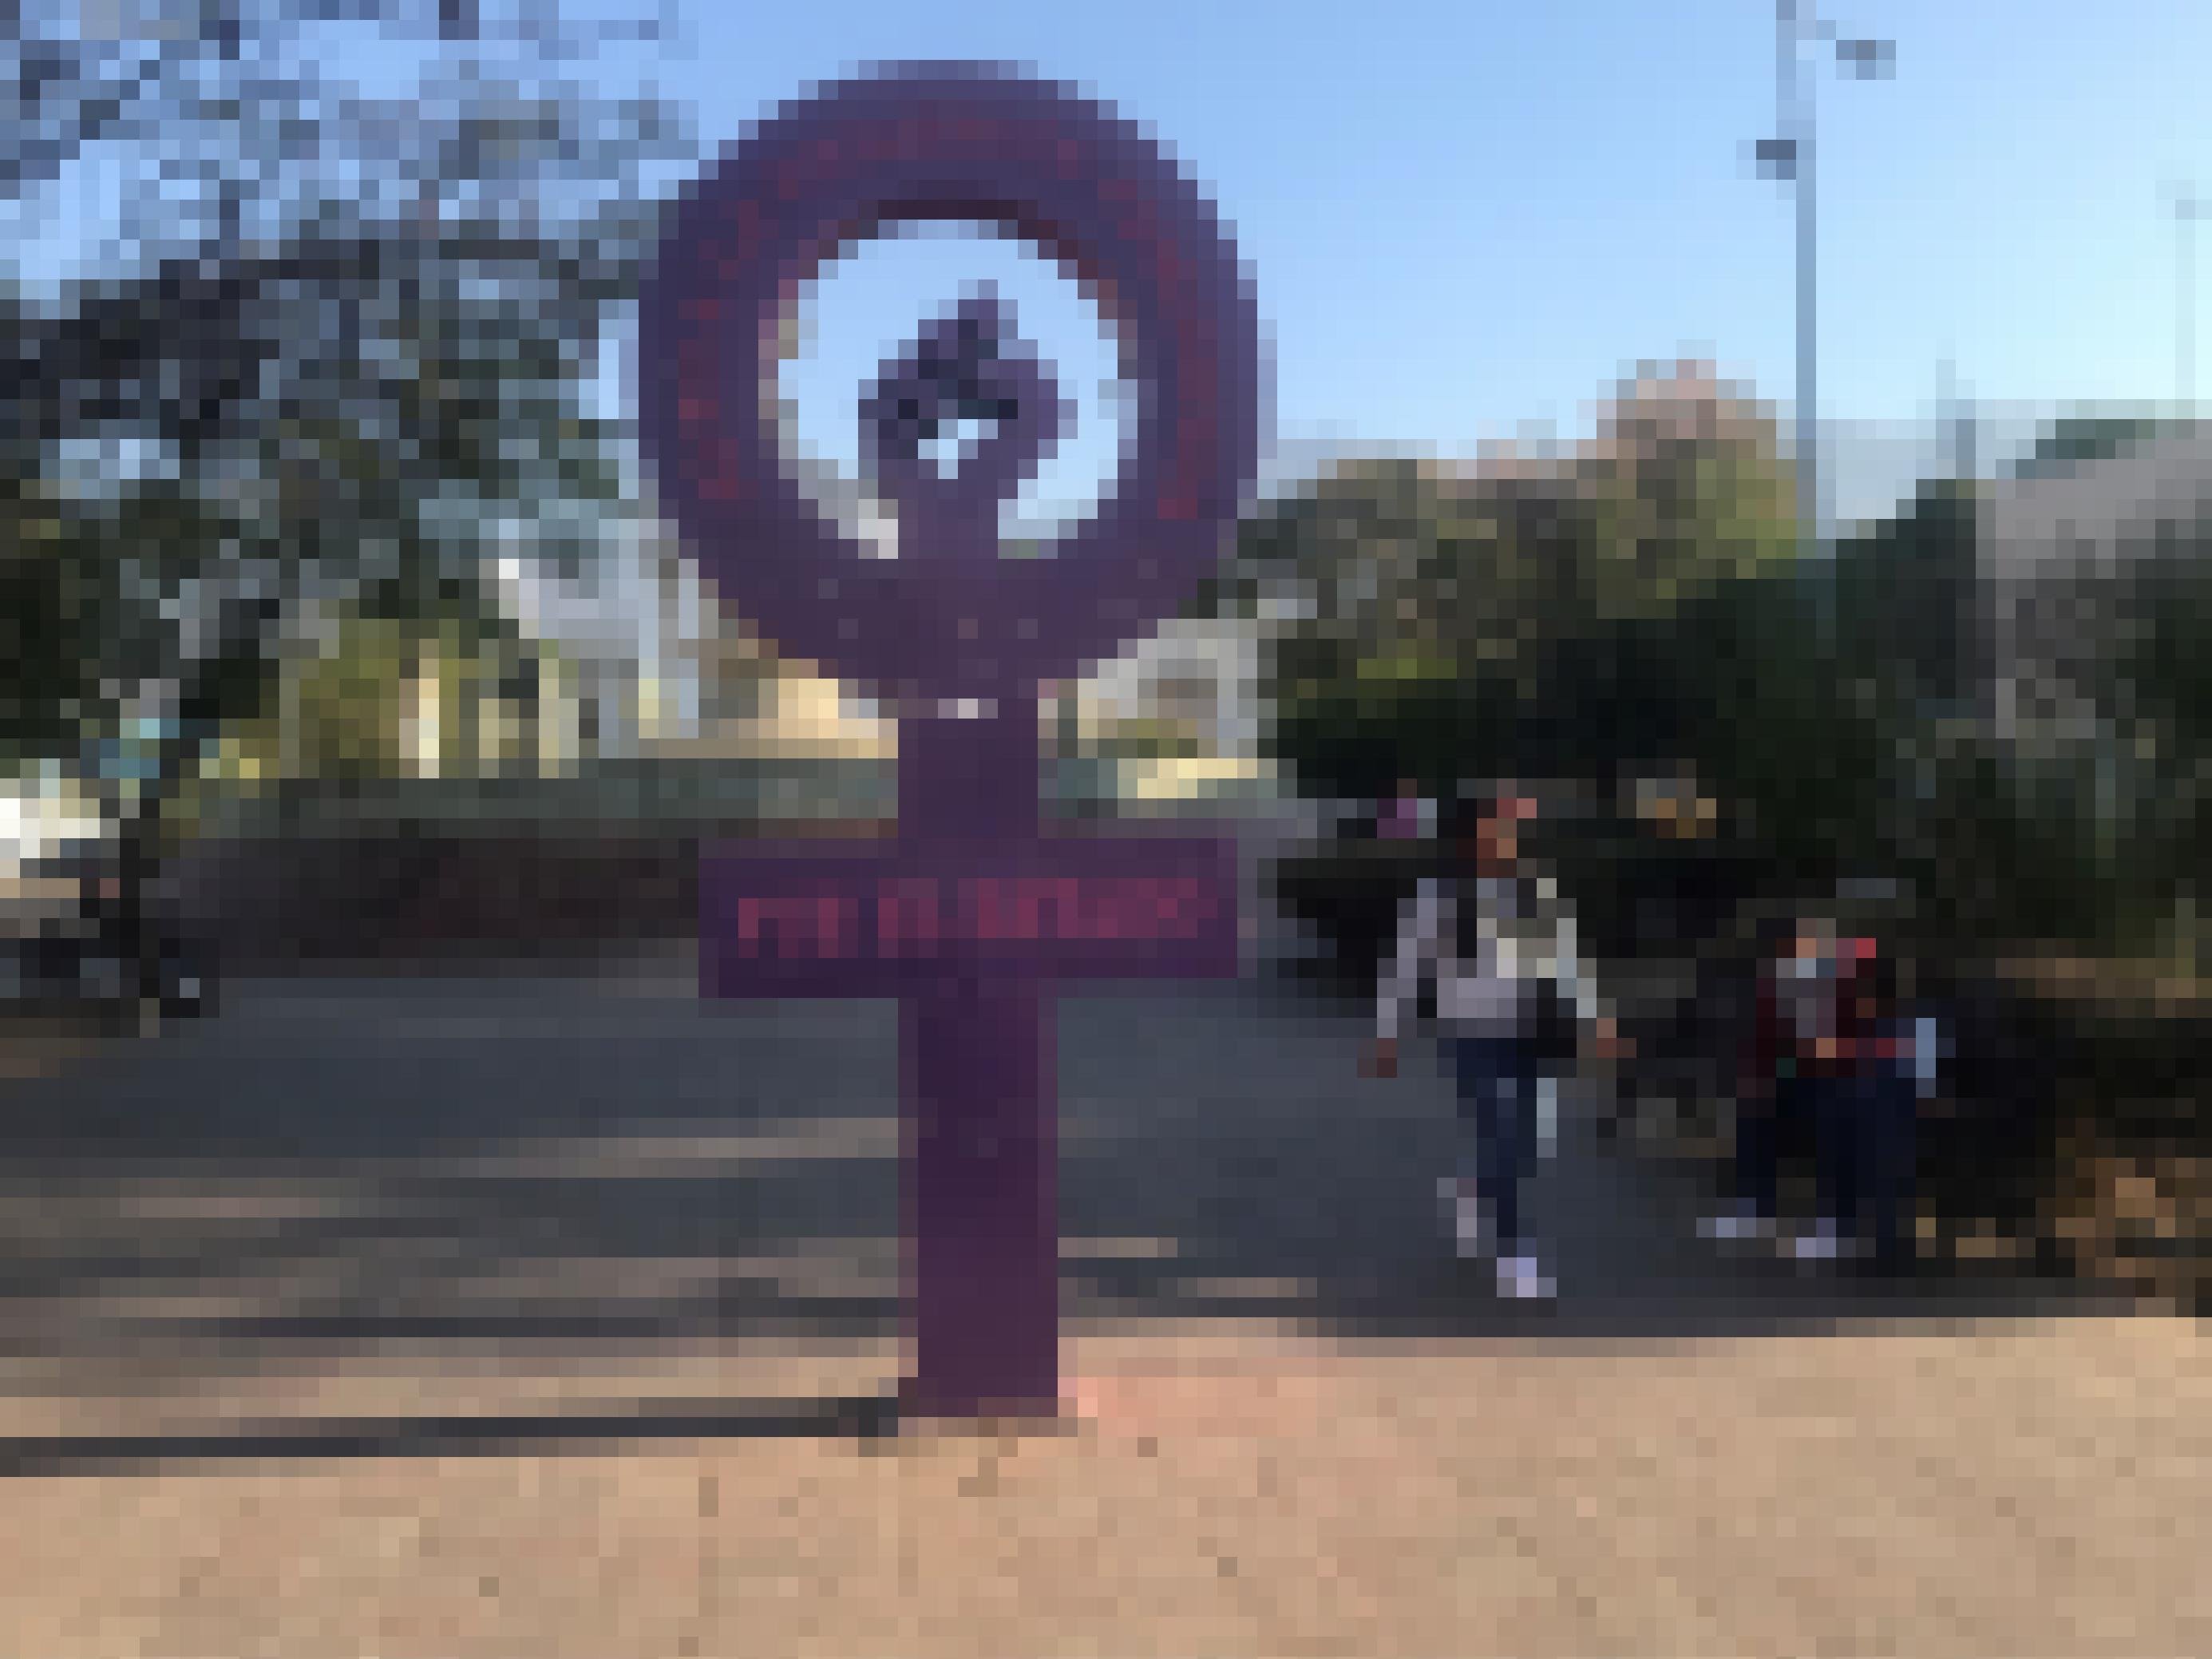 Zu sehen ist eine überlebensgroße, violette Skulptur in Form eines Frauenzeichens im mexikanischen Oaxaca. Auf dem Querbalken des Kreuzes steht auf spanisch „Es war der Staat“. Das Mahnmal erinnert an ermordete Frauen.